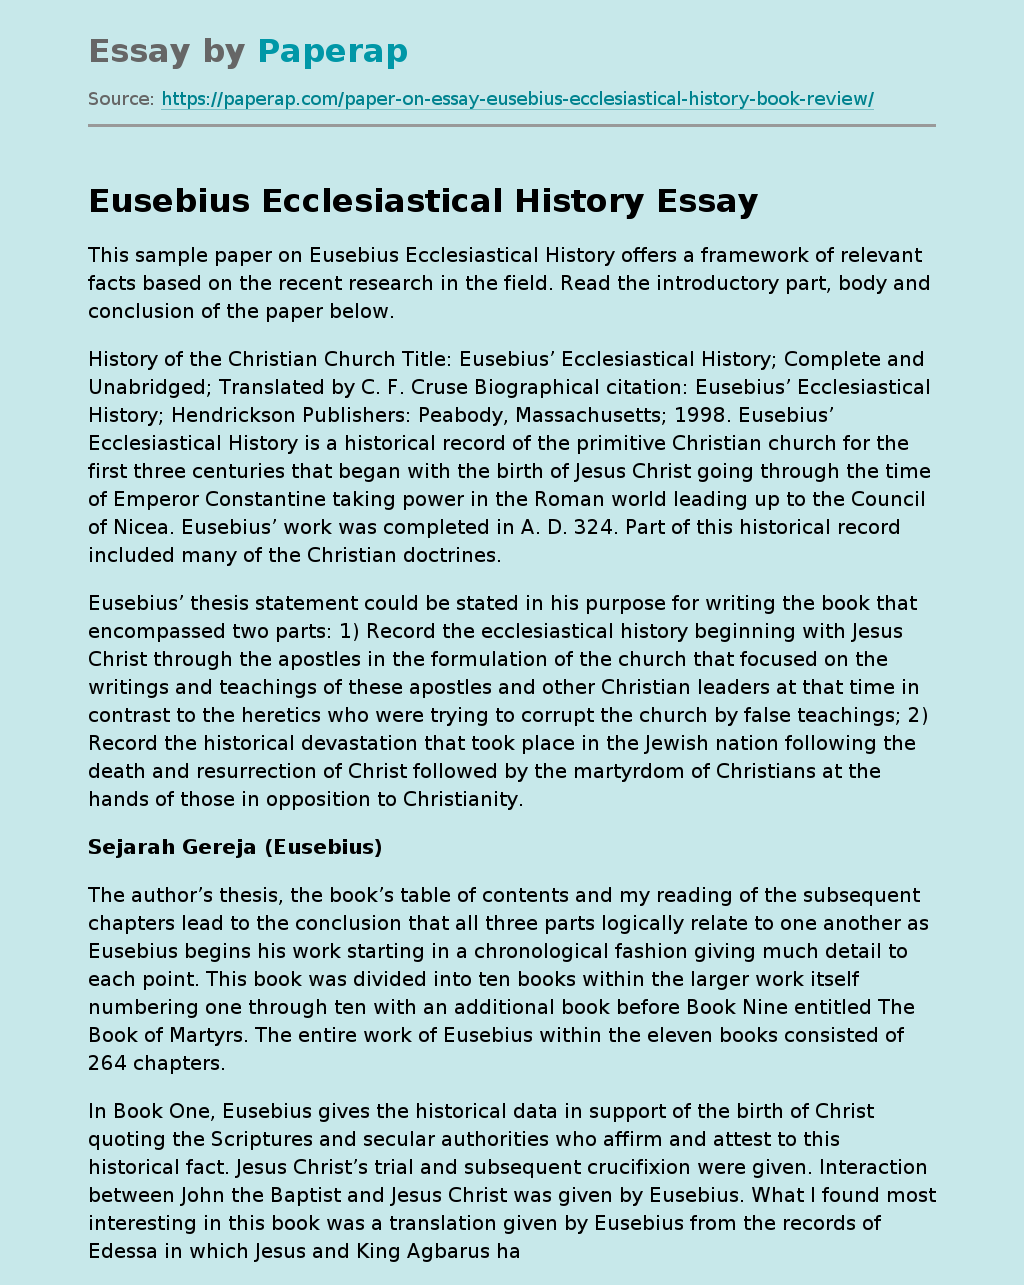 Eusebius Ecclesiastical History